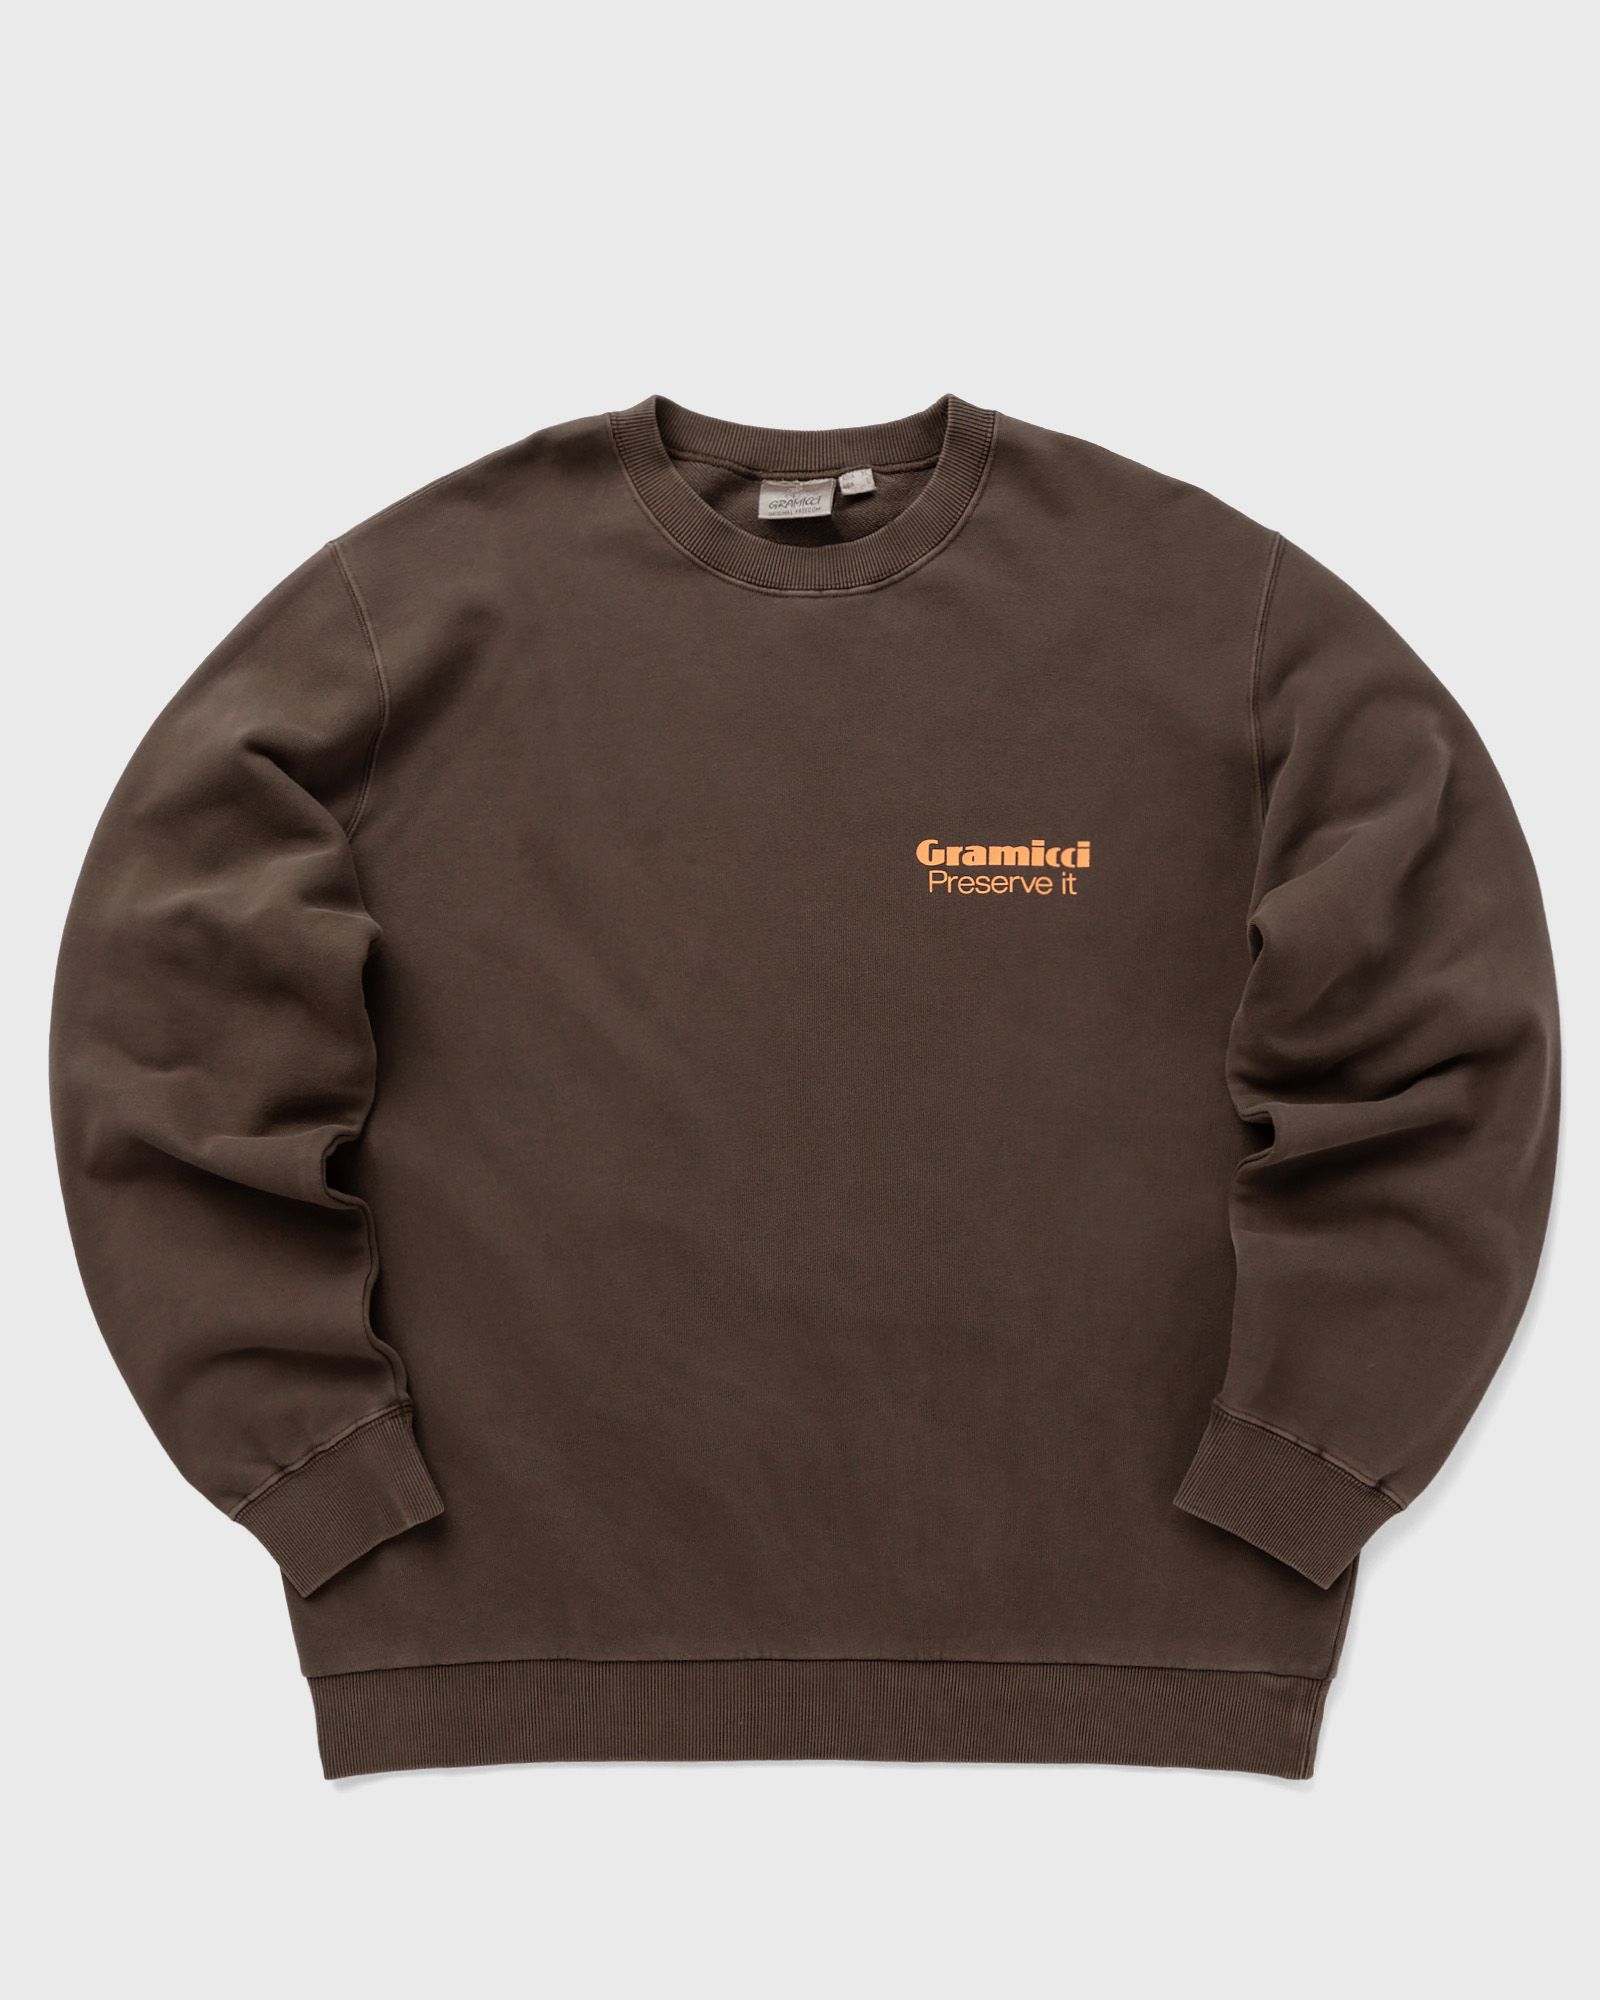 Gramicci - preserve-it sweatshirt men sweatshirts brown in größe:xl